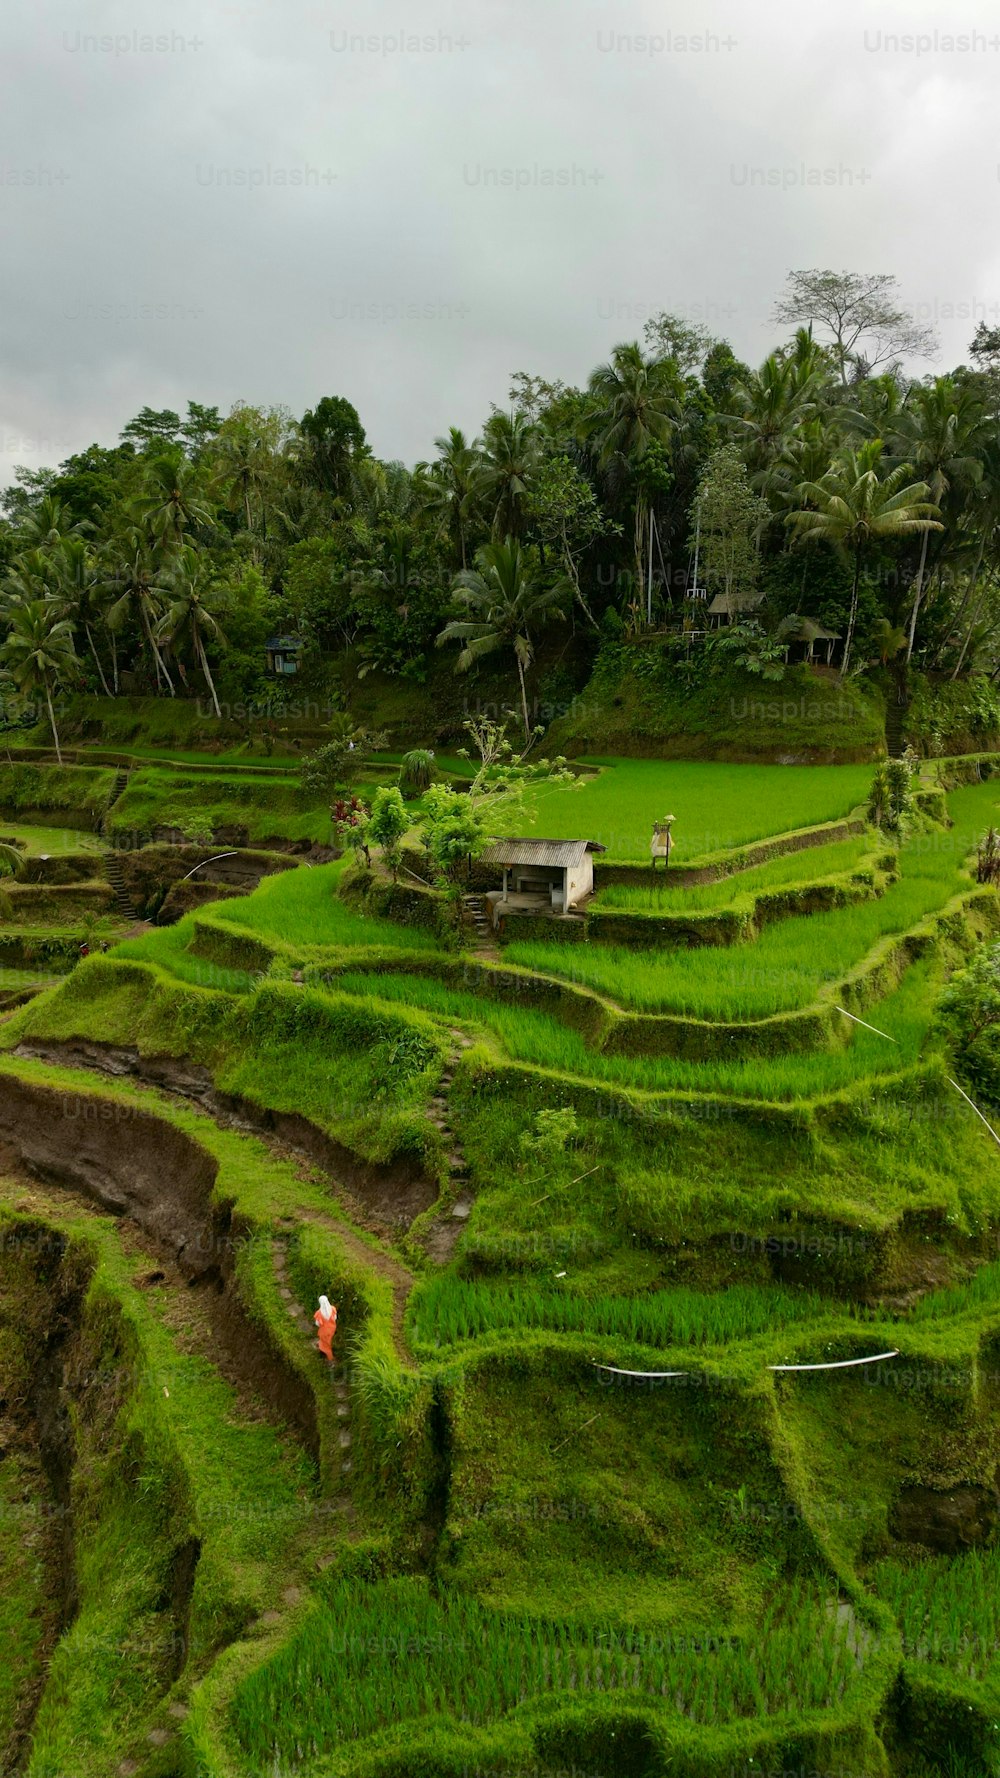 인도네시아 발리의 테갈라랑 라이스 테라스(Tegallalang Rice Terrace)를 오르는 사람의 수직 조감도